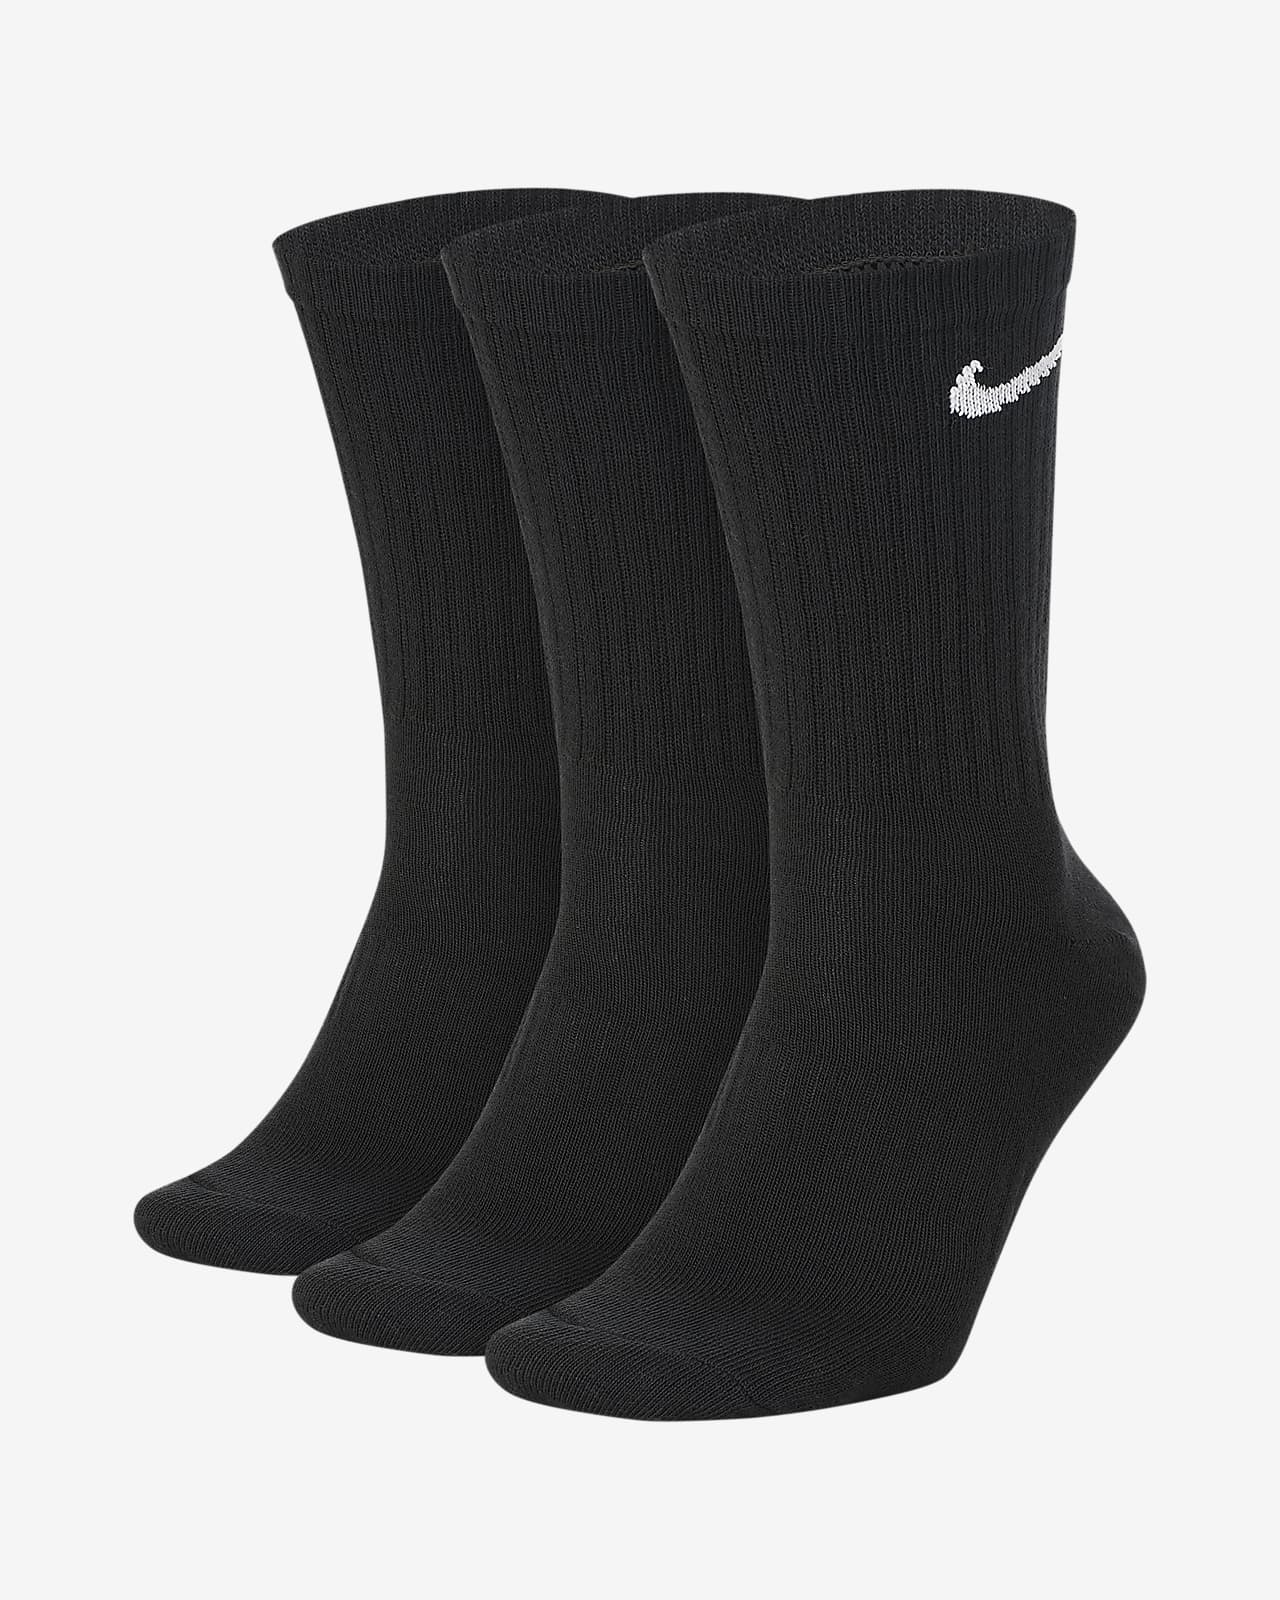 black and white nike socks pack